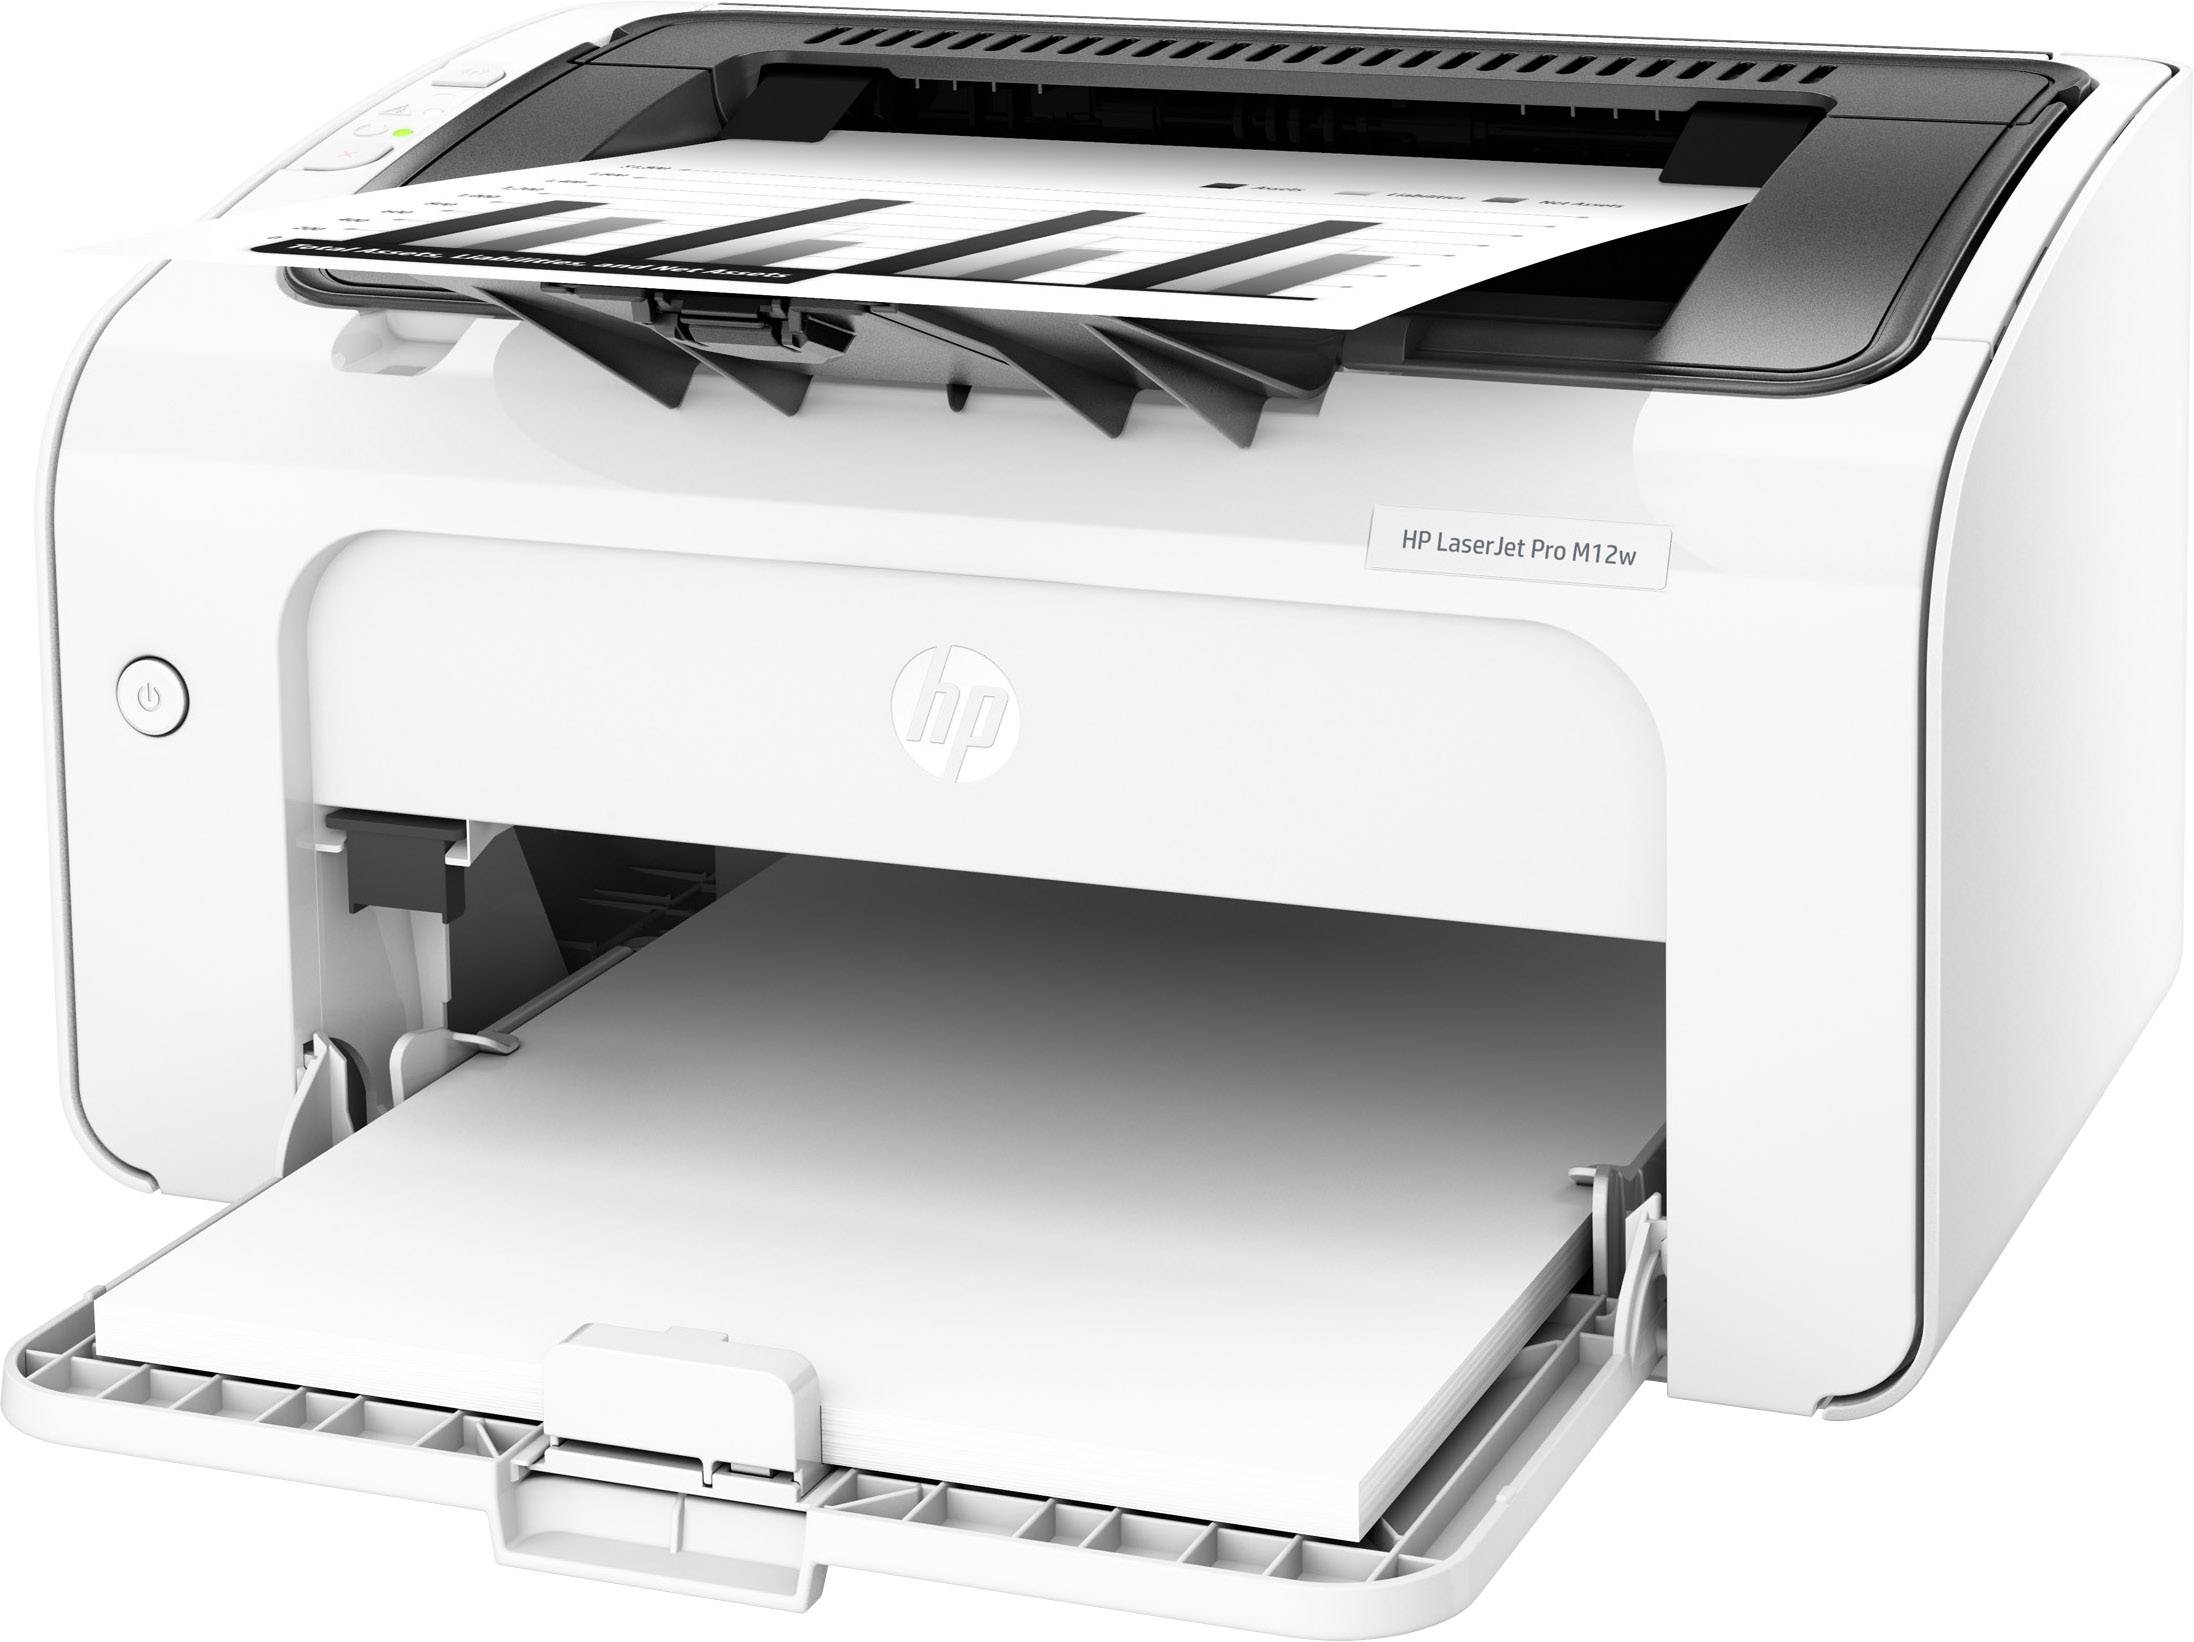 Comment résoudre les erreurs de cartouche d'encre sur les imprimantes jet d' encre HP